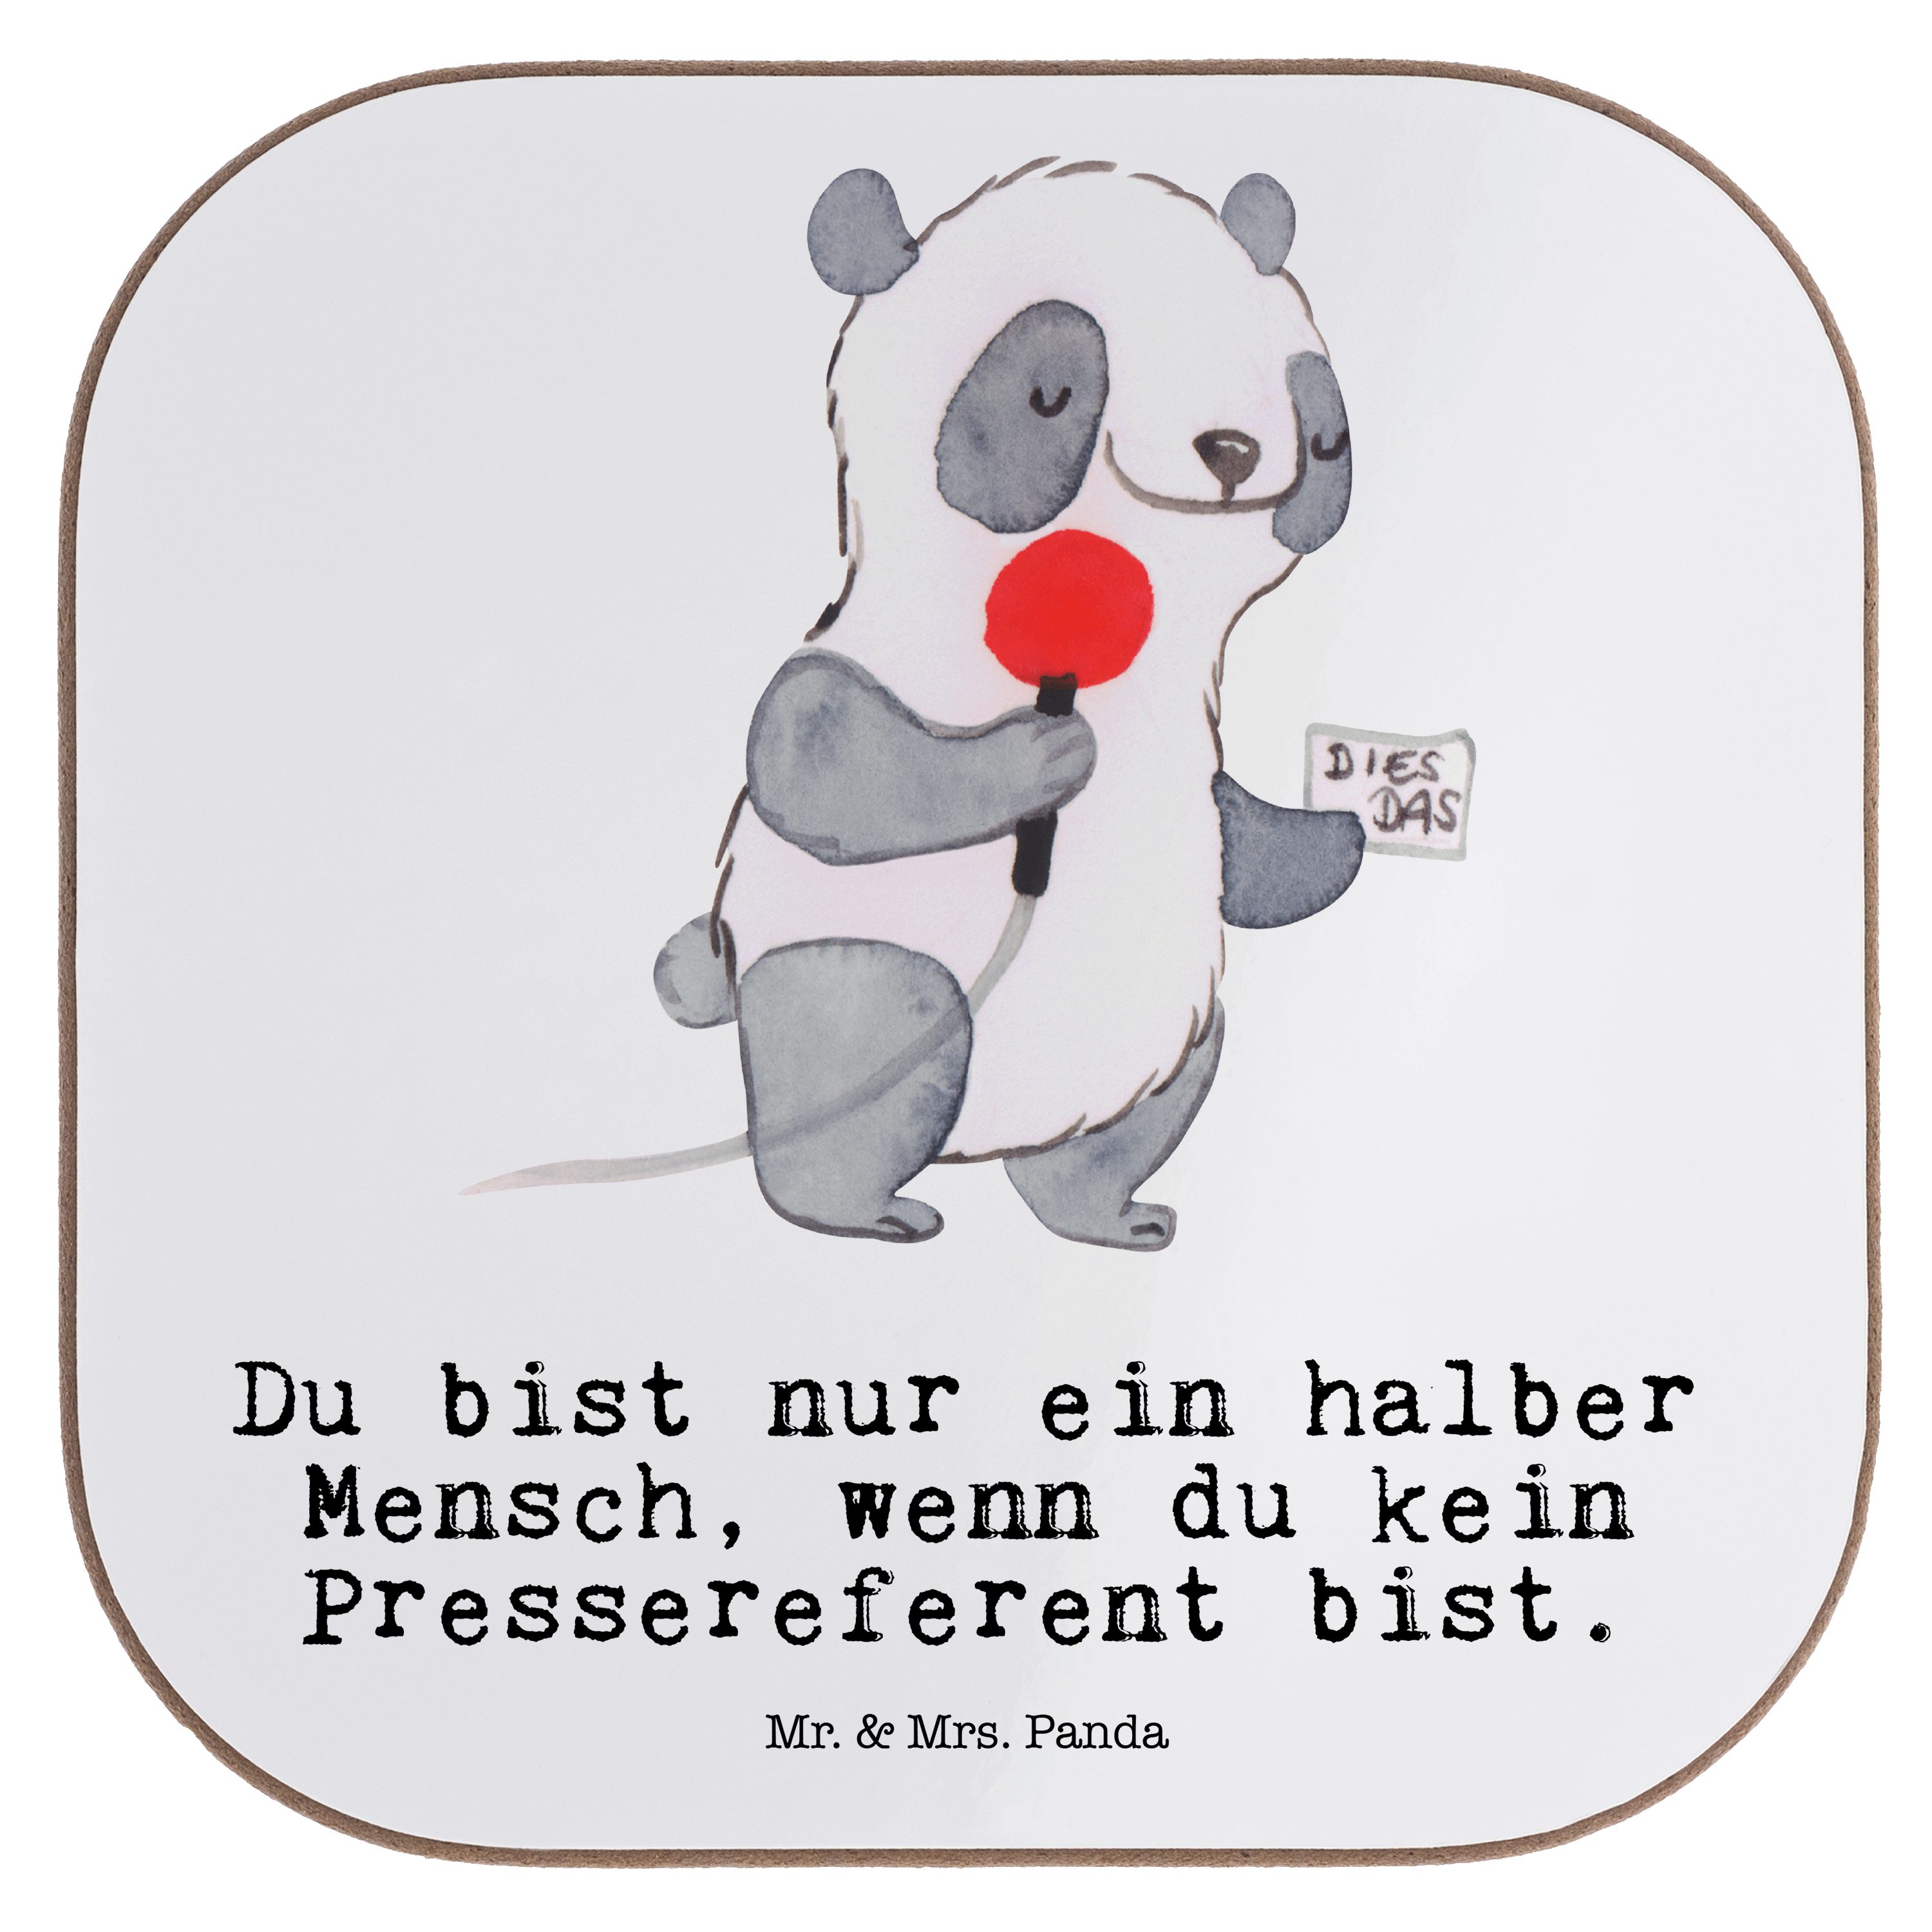 Mr. & Mrs. Panda Getränkeuntersetzer Pressereferent mit Herz - Weiß - Geschenk, Studium, Untersetzer Gläse, 1-tlg.